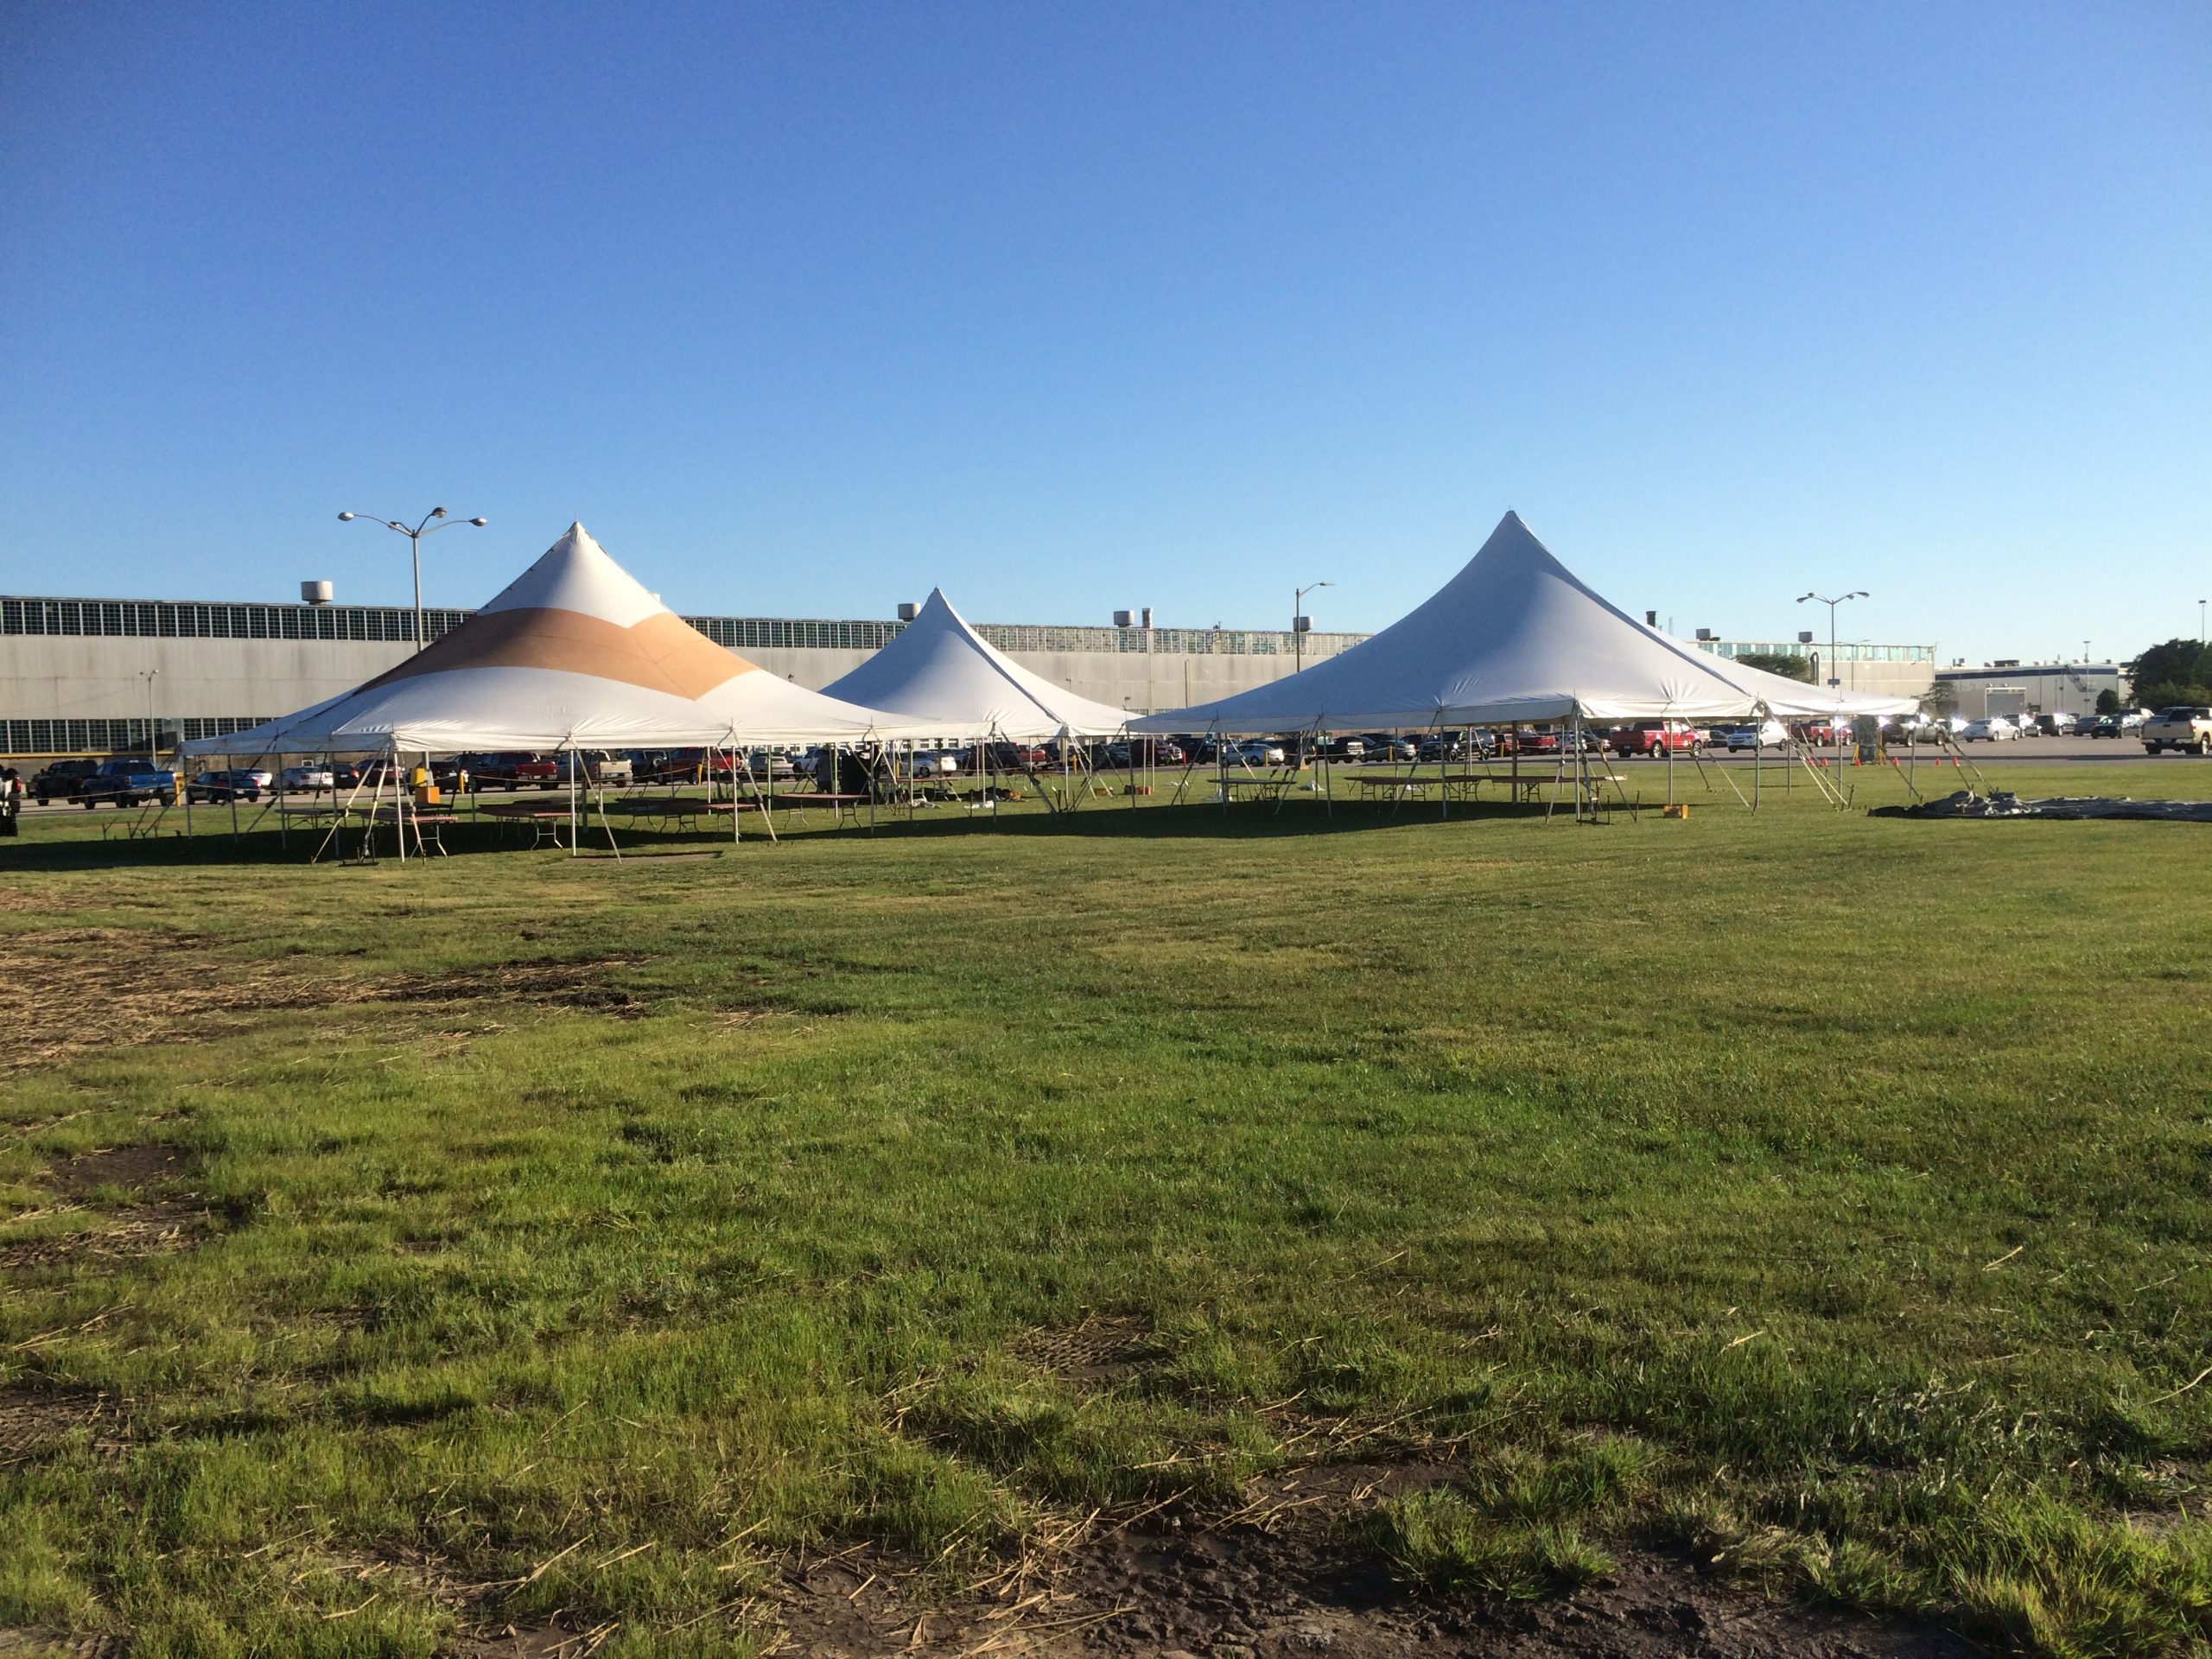 Multi-tent event in Bettendorf, Iowa at Alcoa